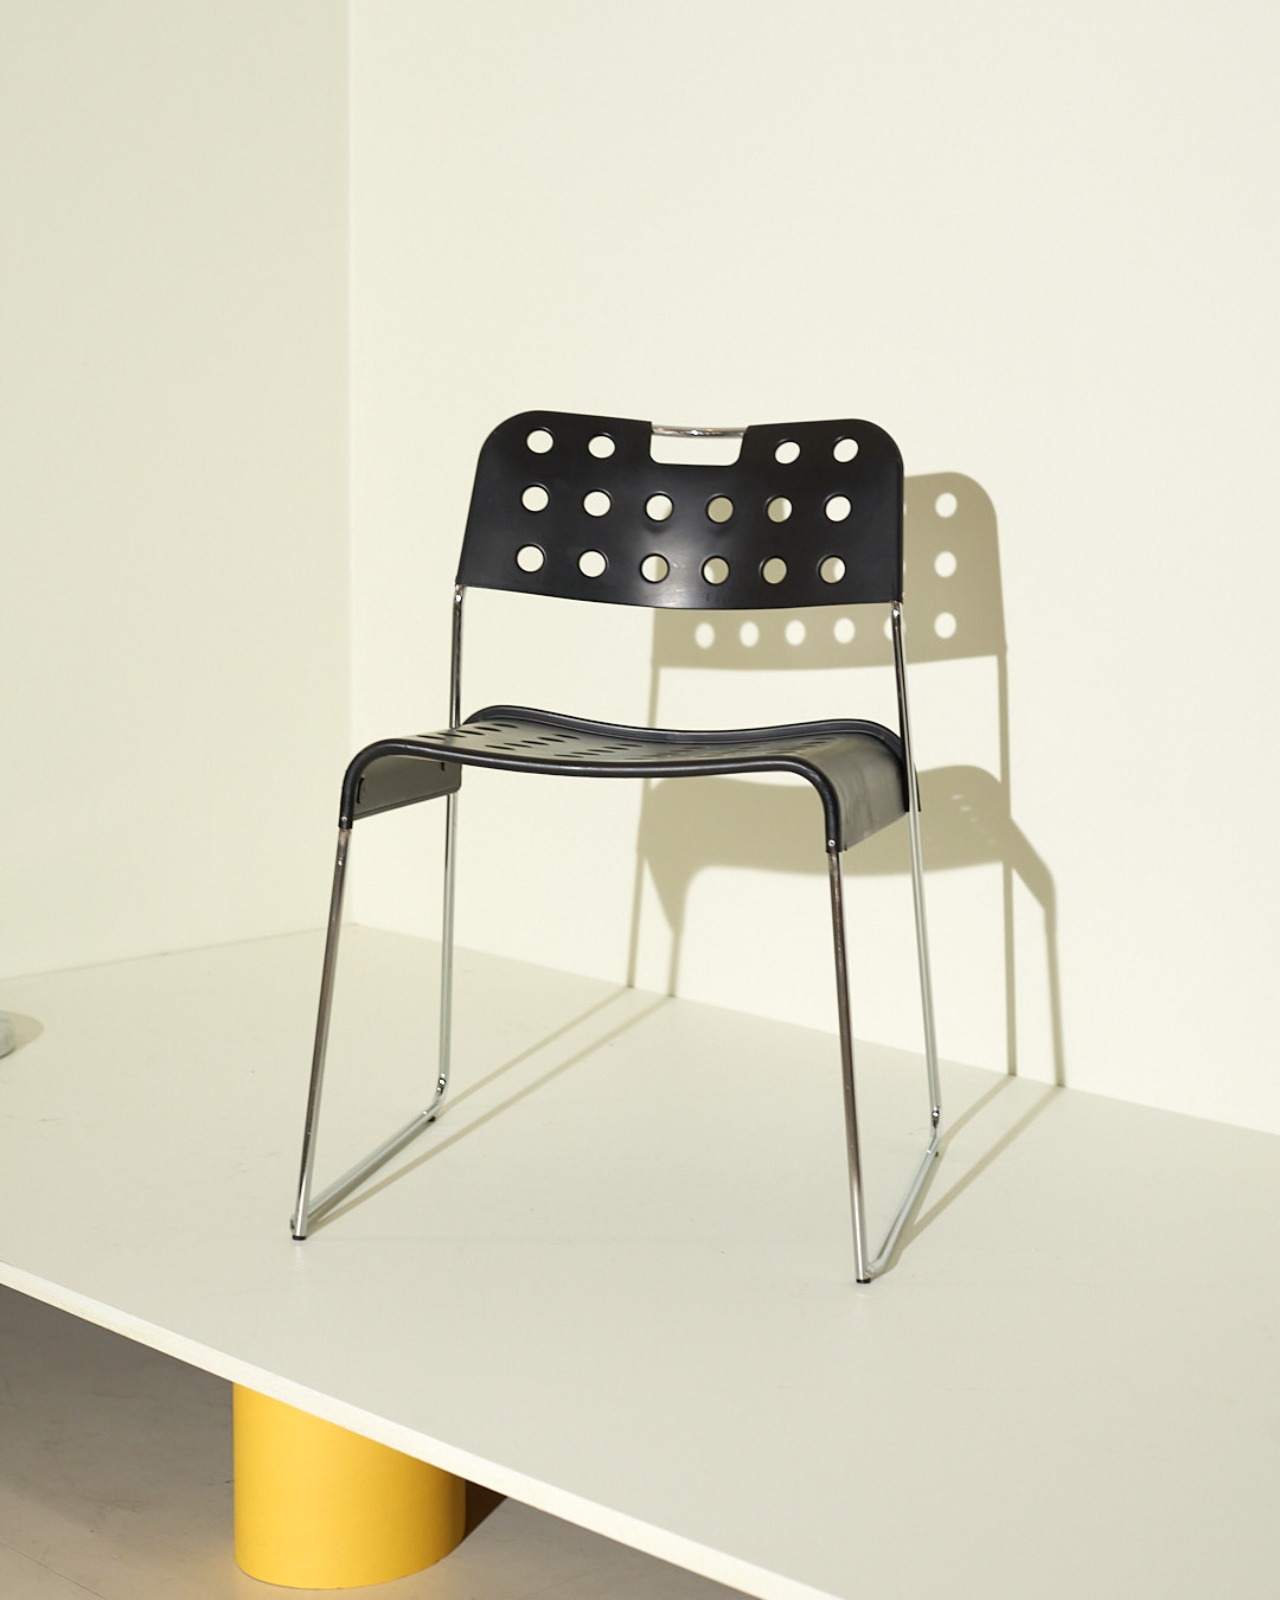 Modern Metal Chairs Omstak by Rodney Kinsman for Bieffeplast 70s (black)